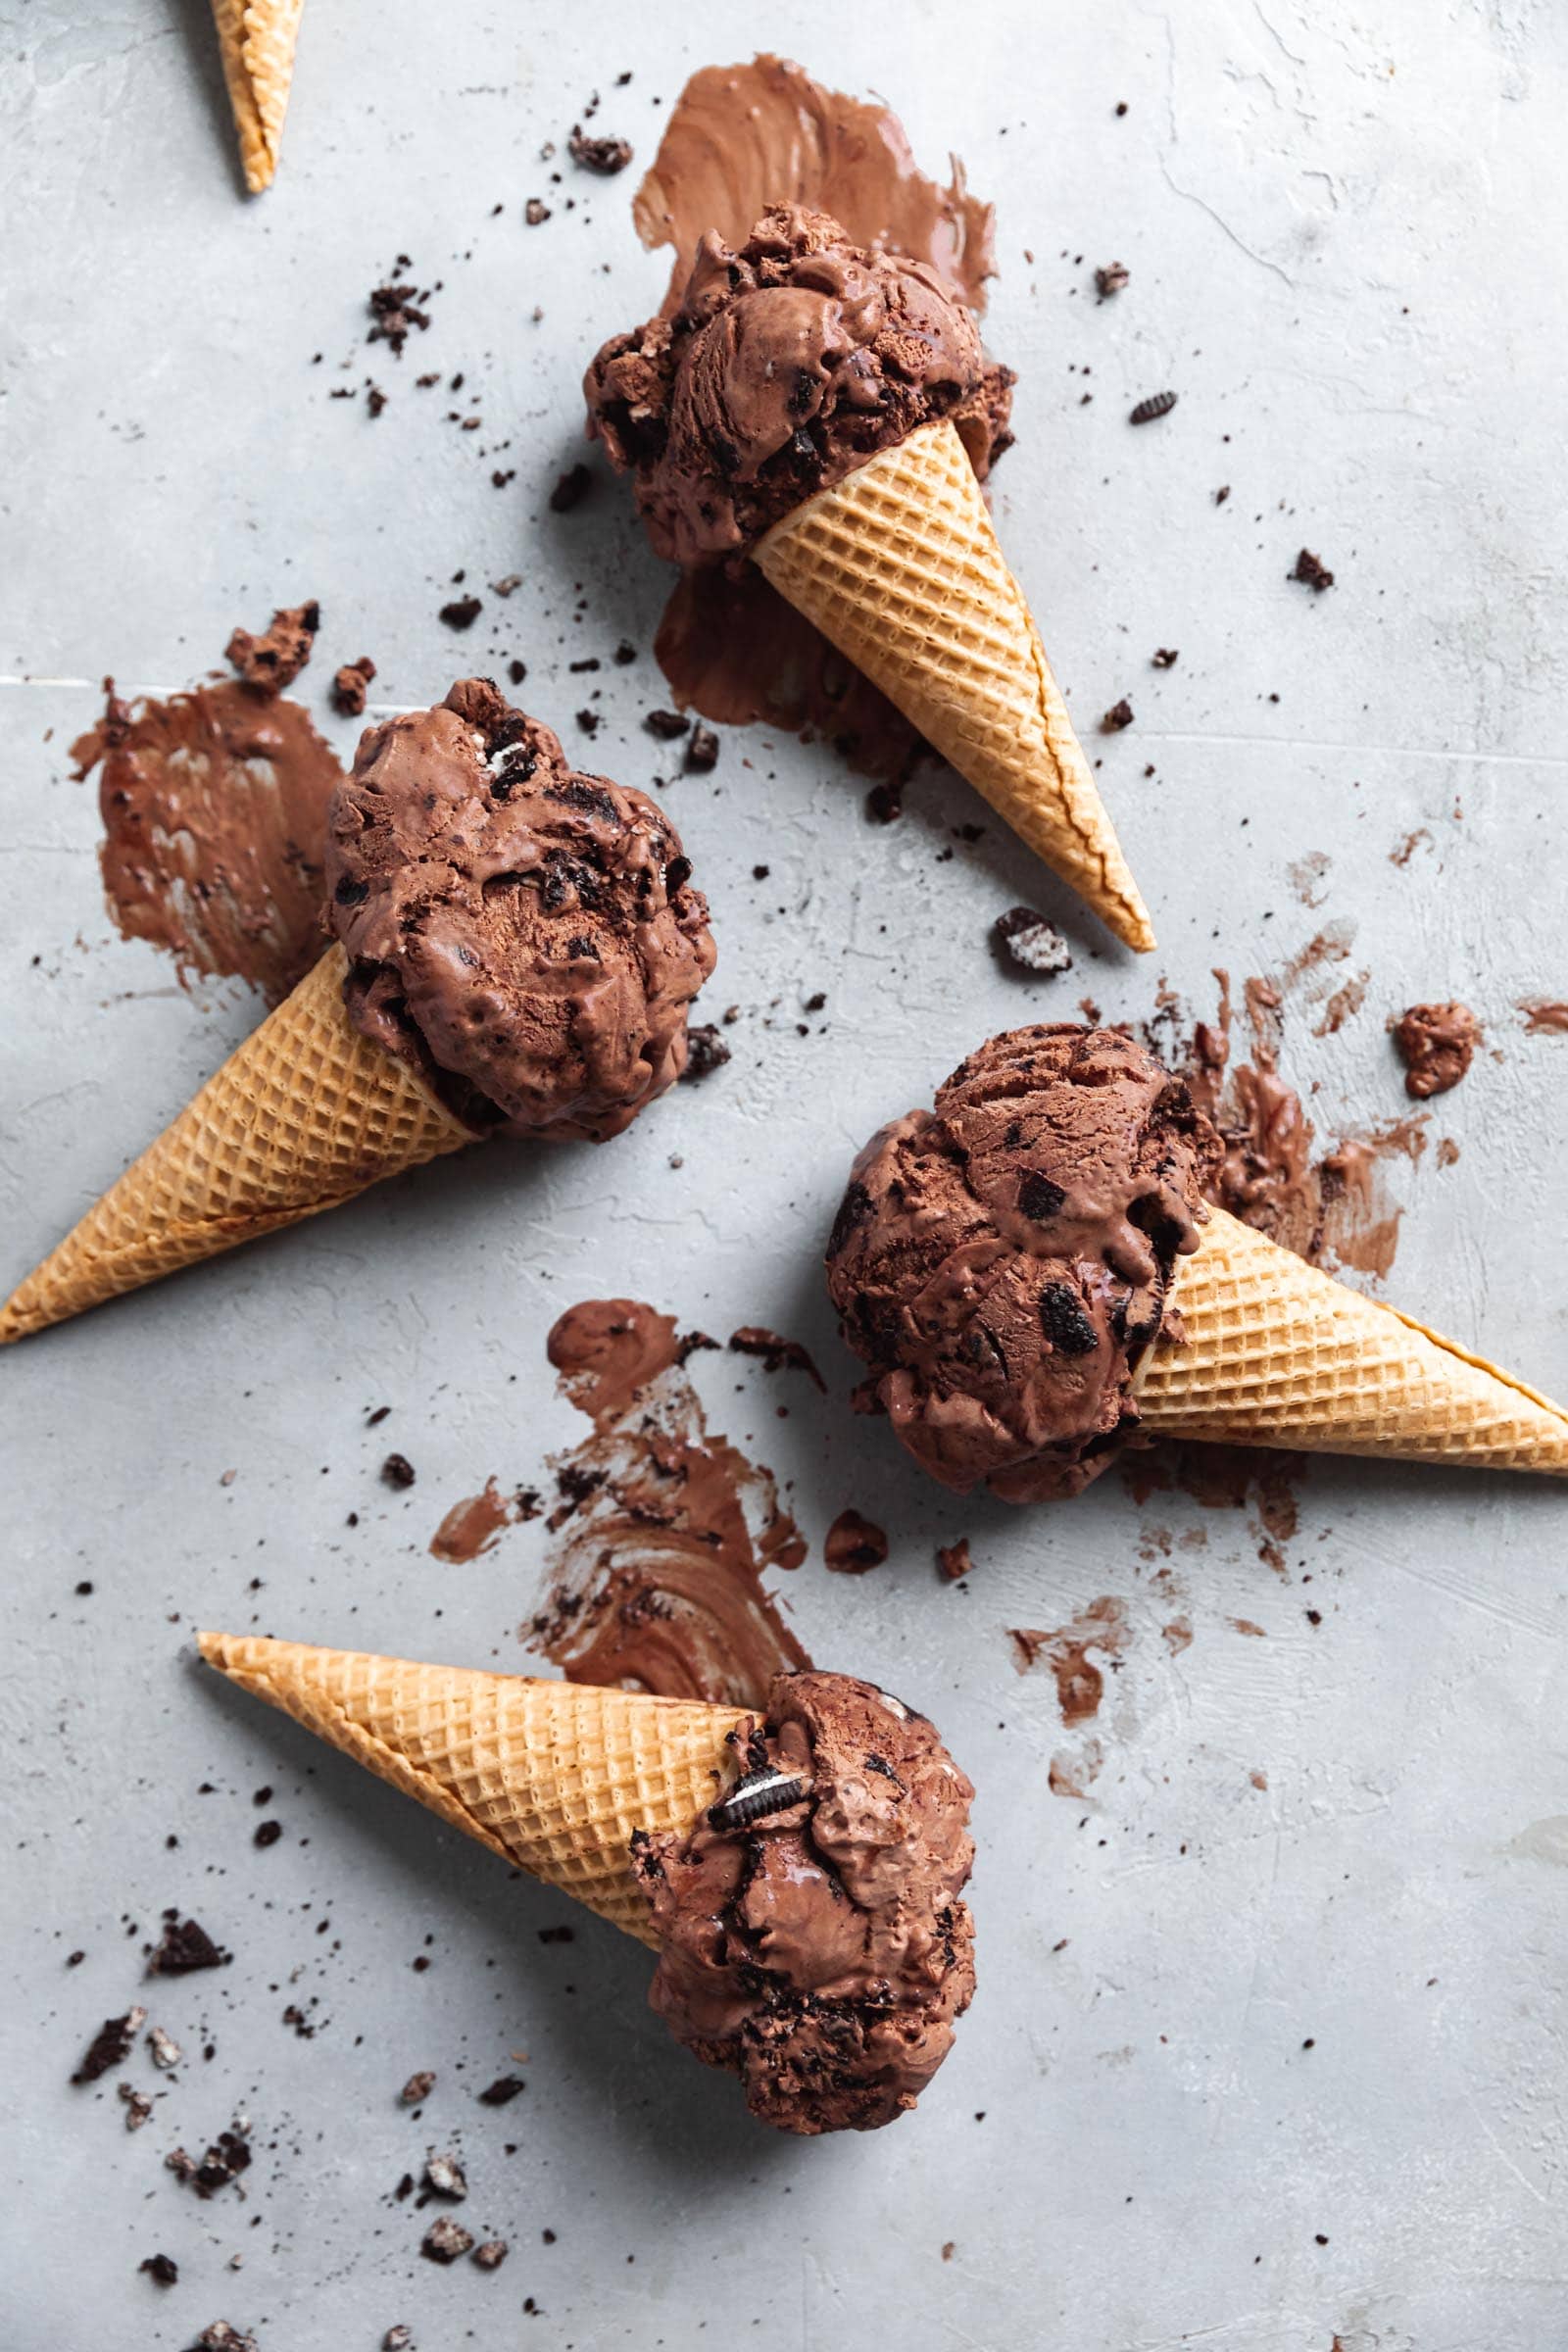 ice cream cones with chocolate oreo ice cream